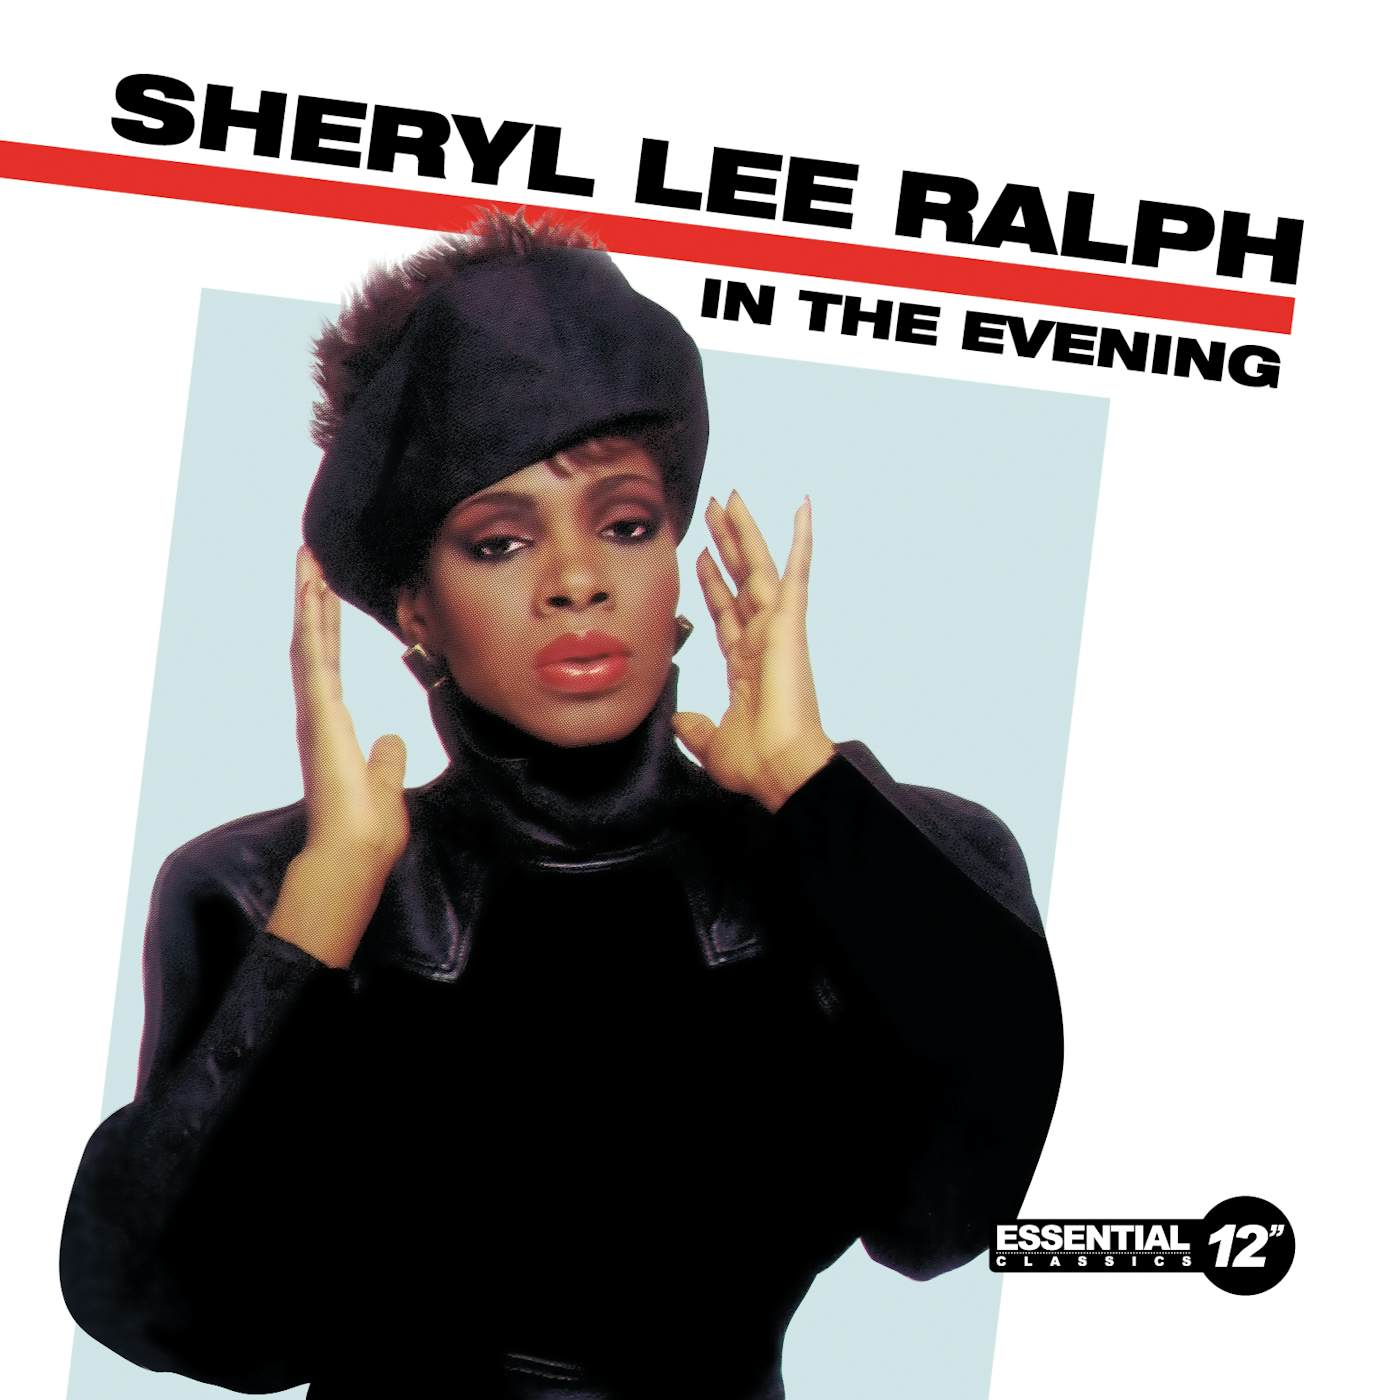 Sheryl Lee Ralph IN EVENING CD